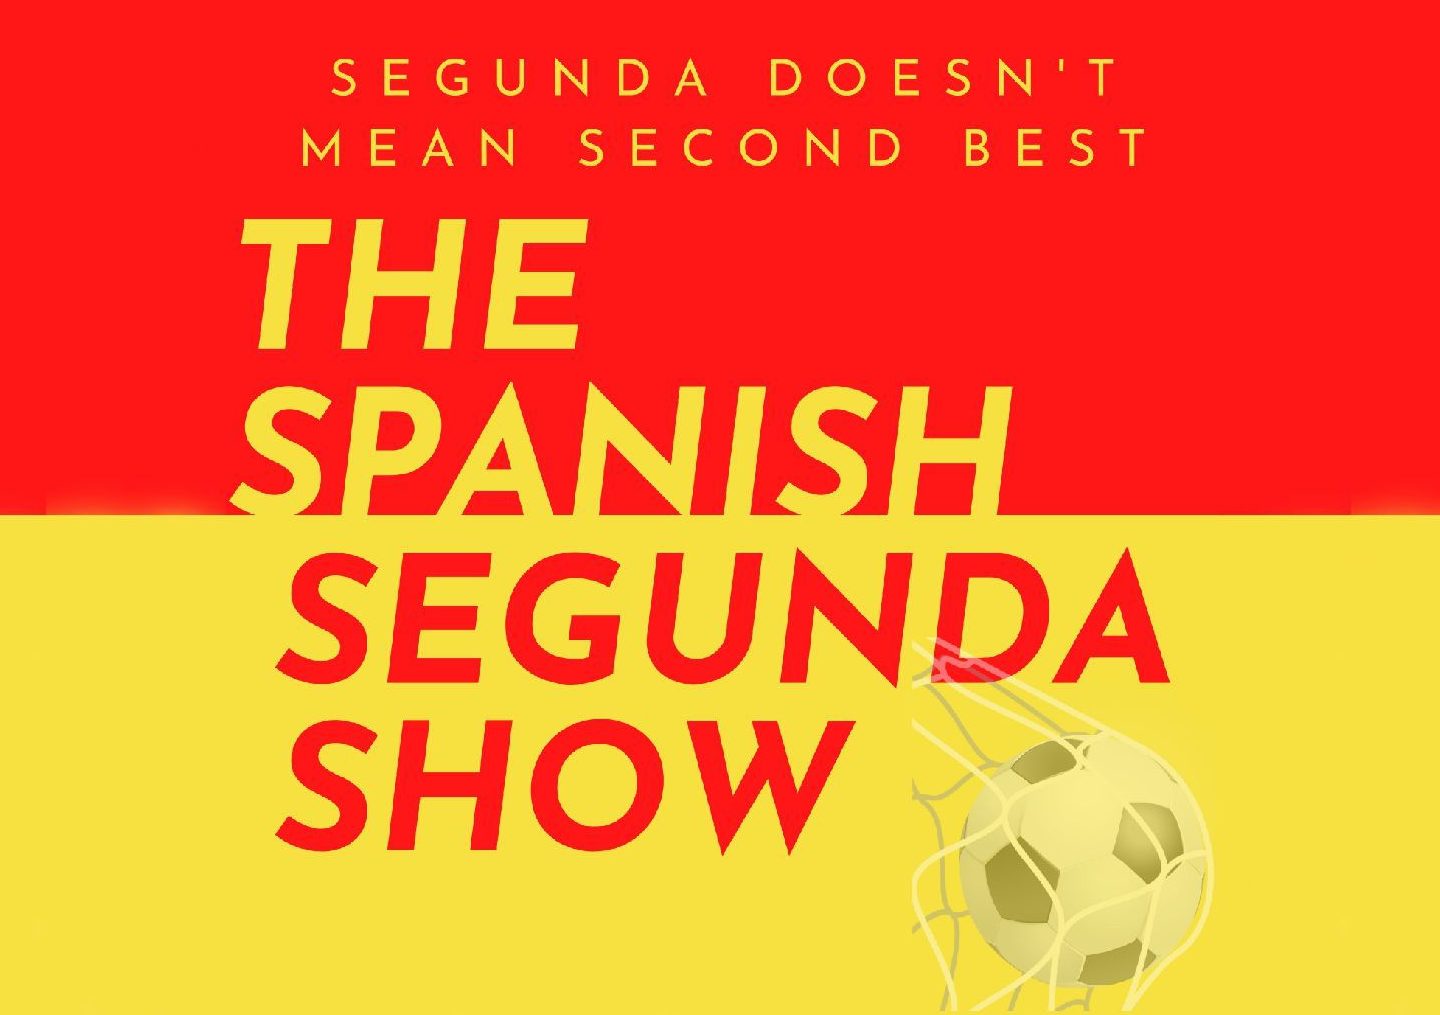 THE SPANISH SEGUNDA SHOW